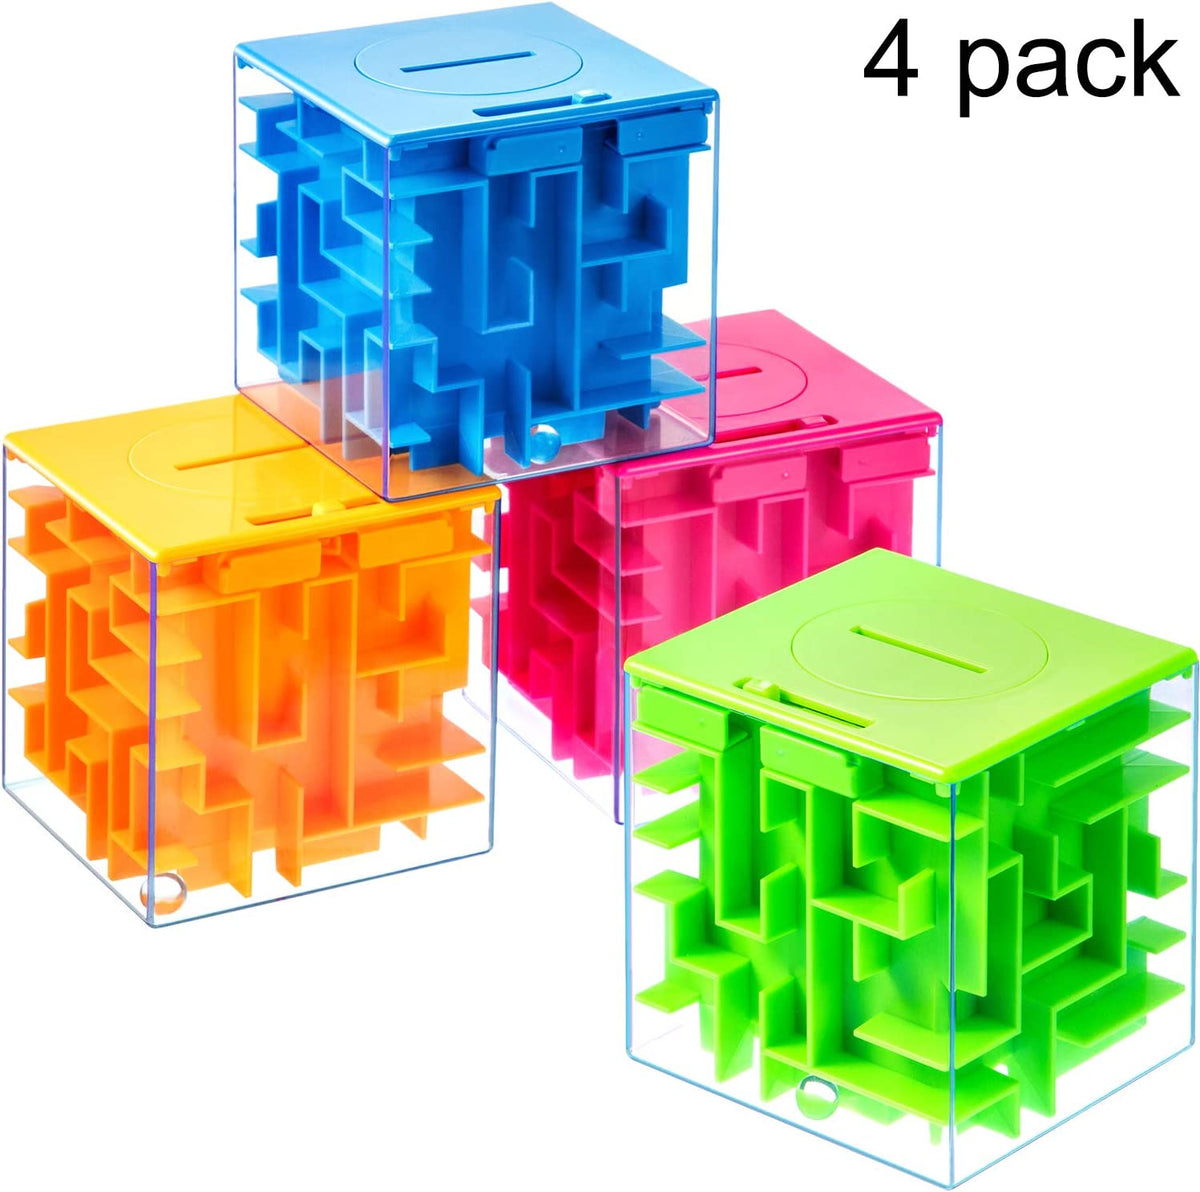 A Maze Cube Puzzle Bank